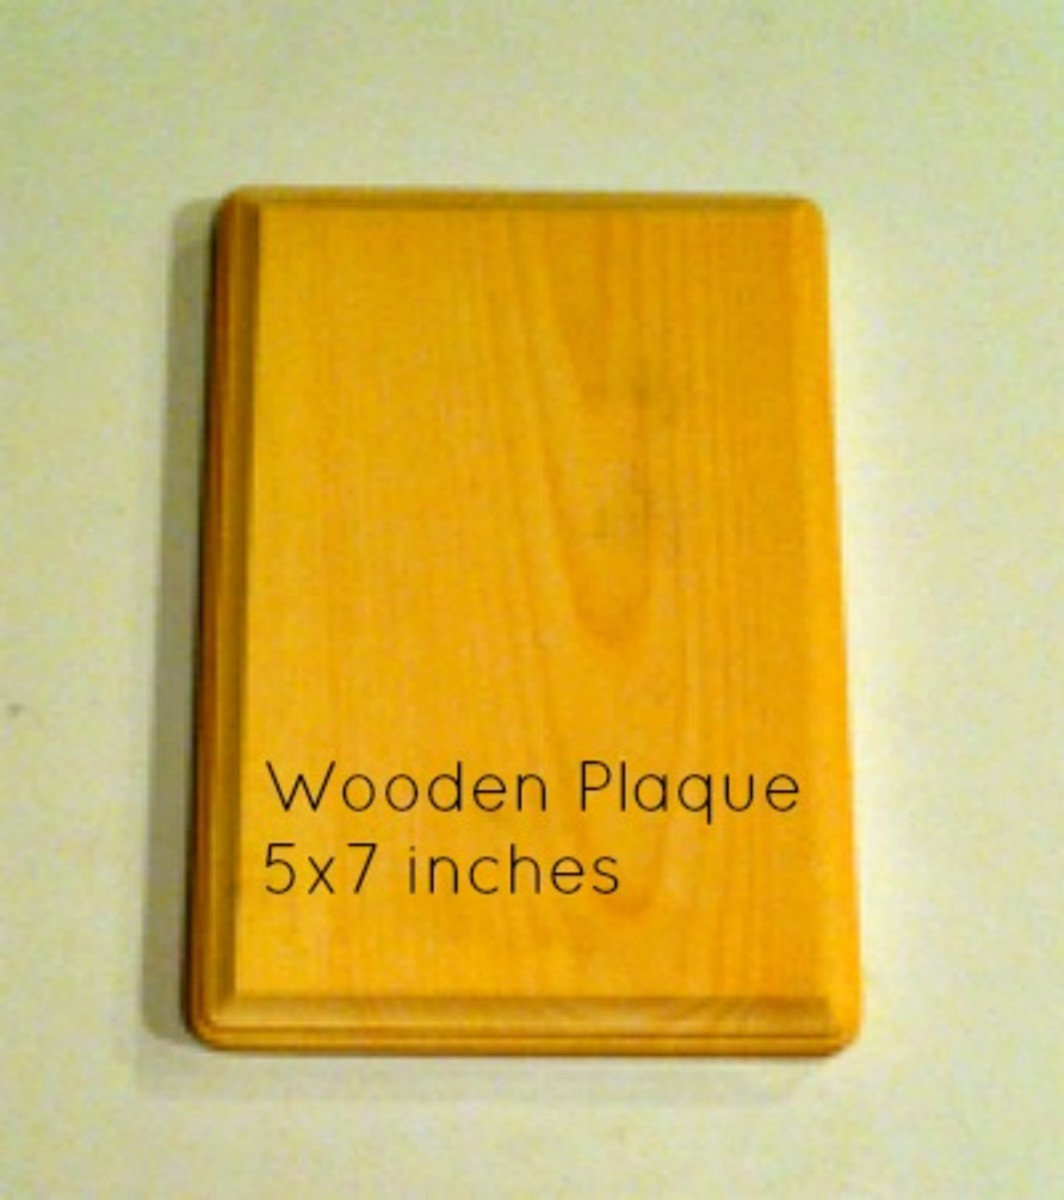 Wooden Plaque 5x7